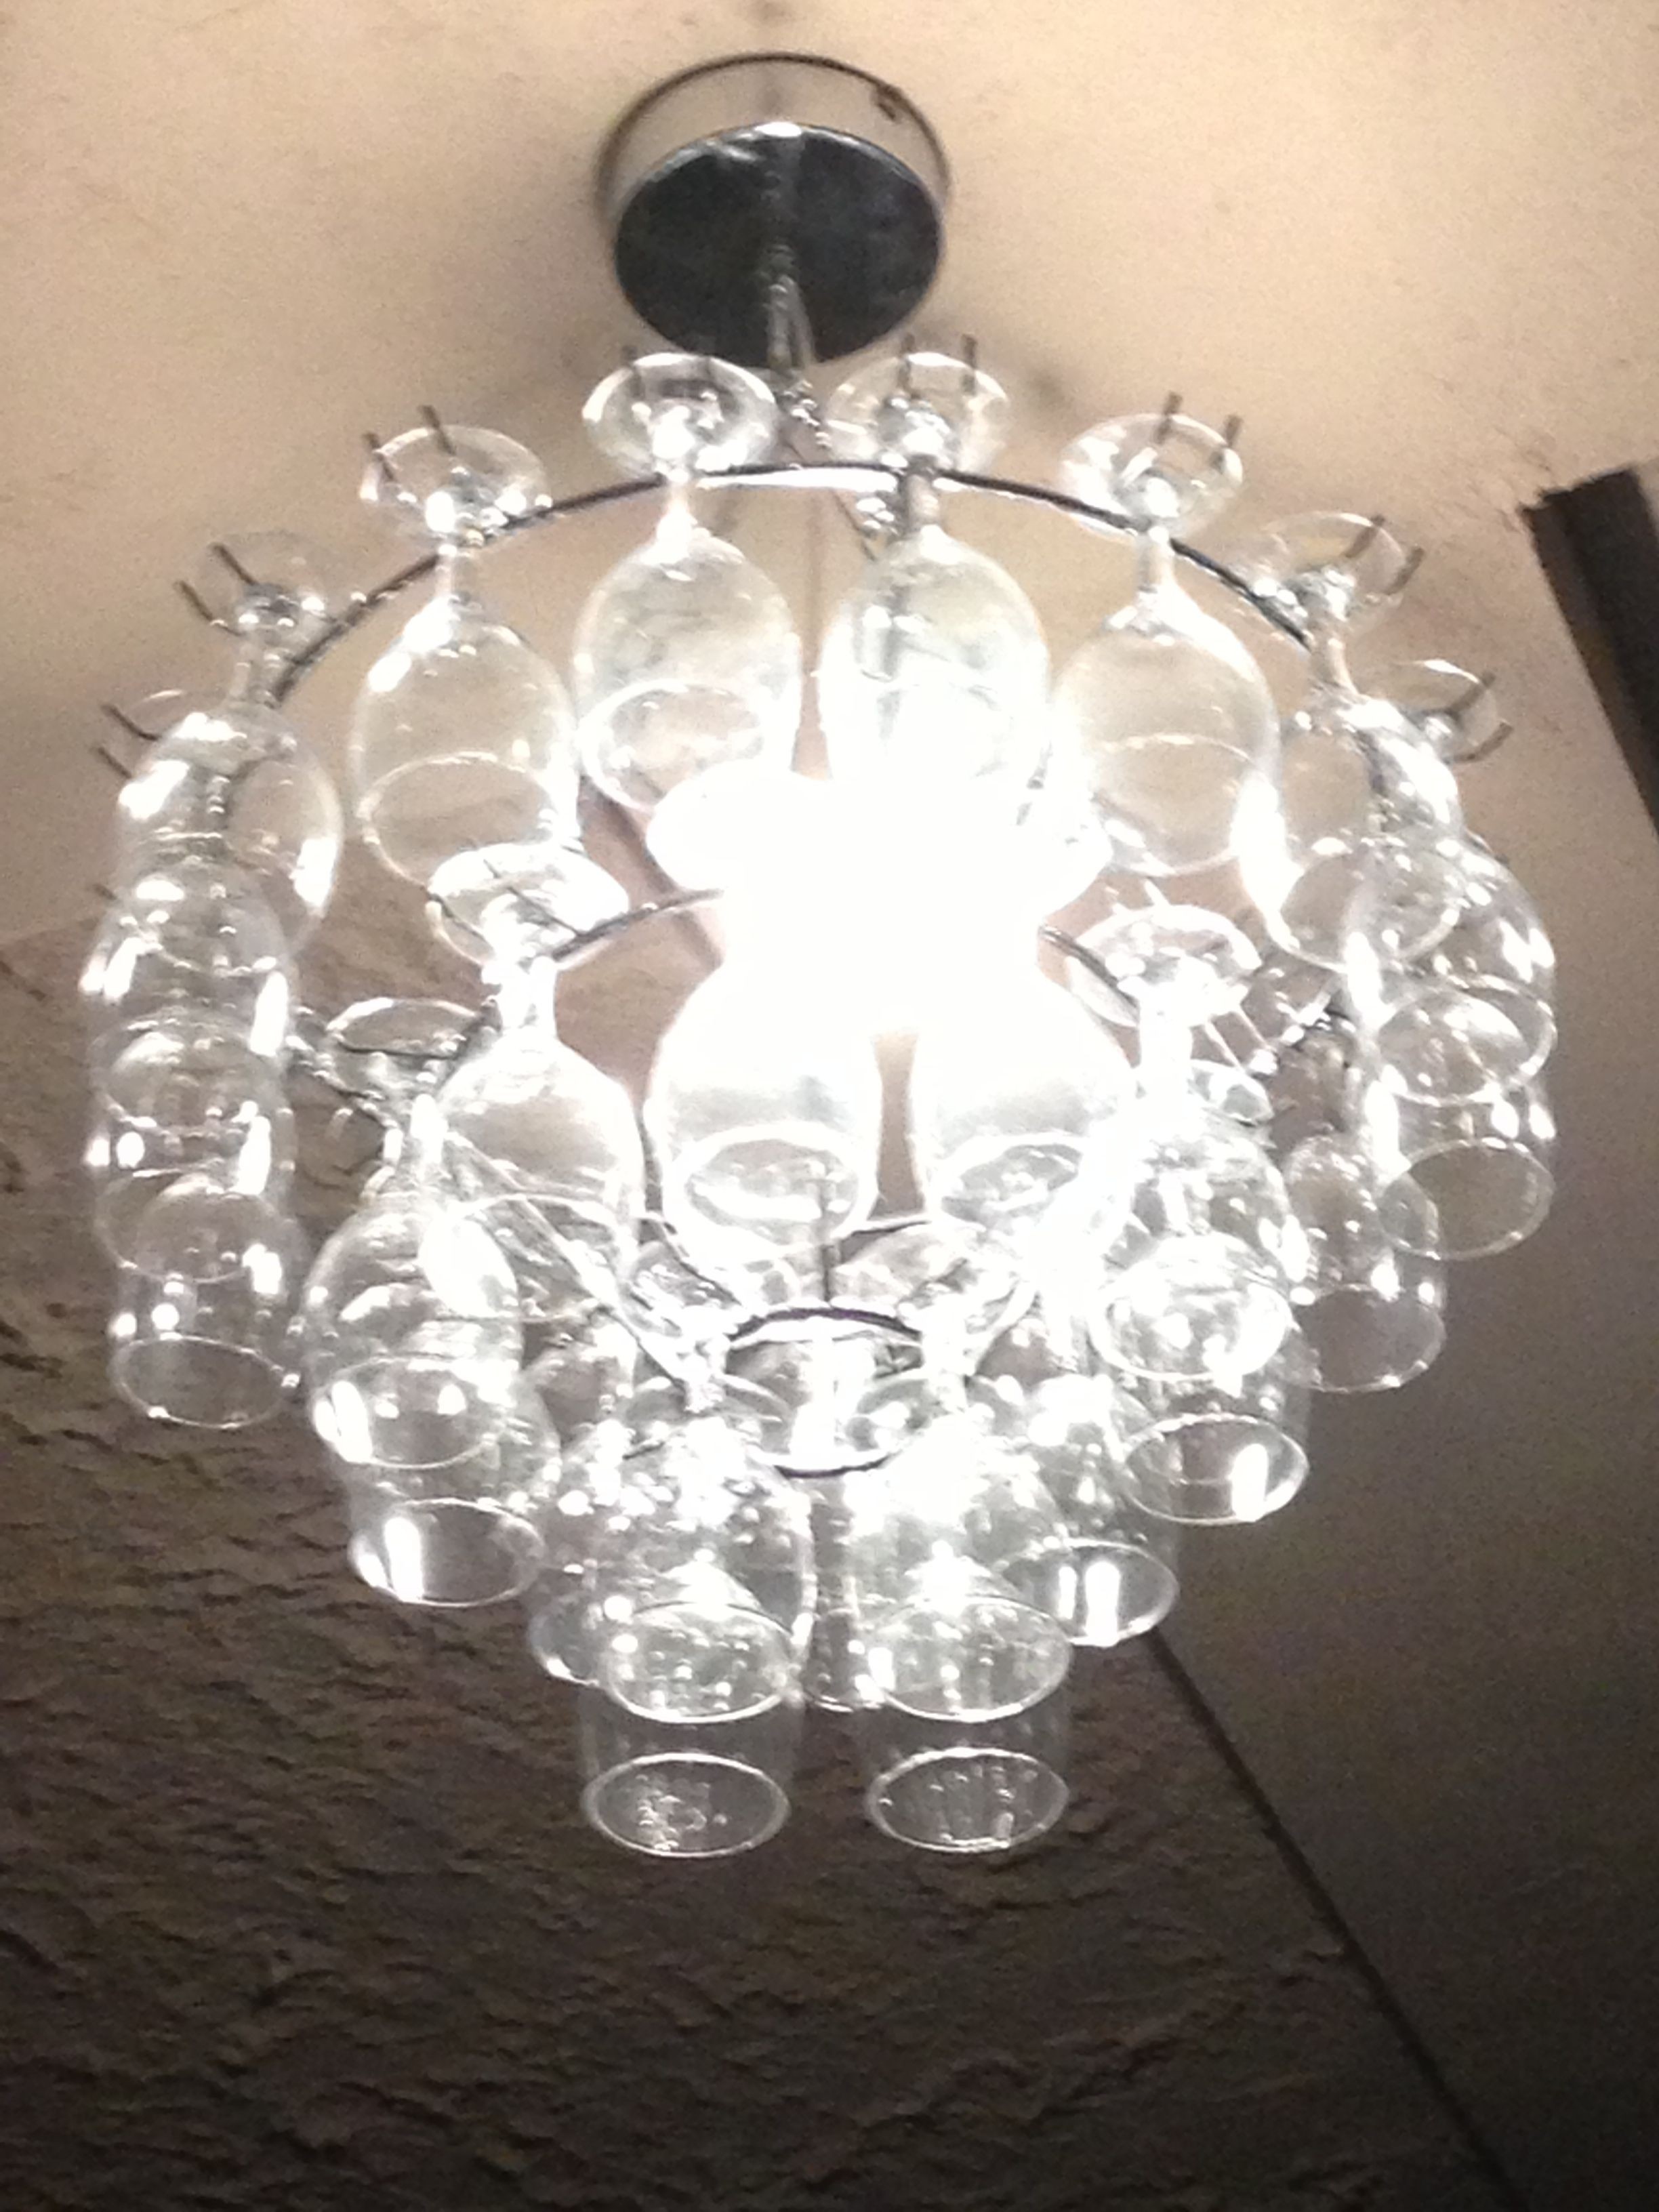 Wine glass chandelier ive found in my local restaurant